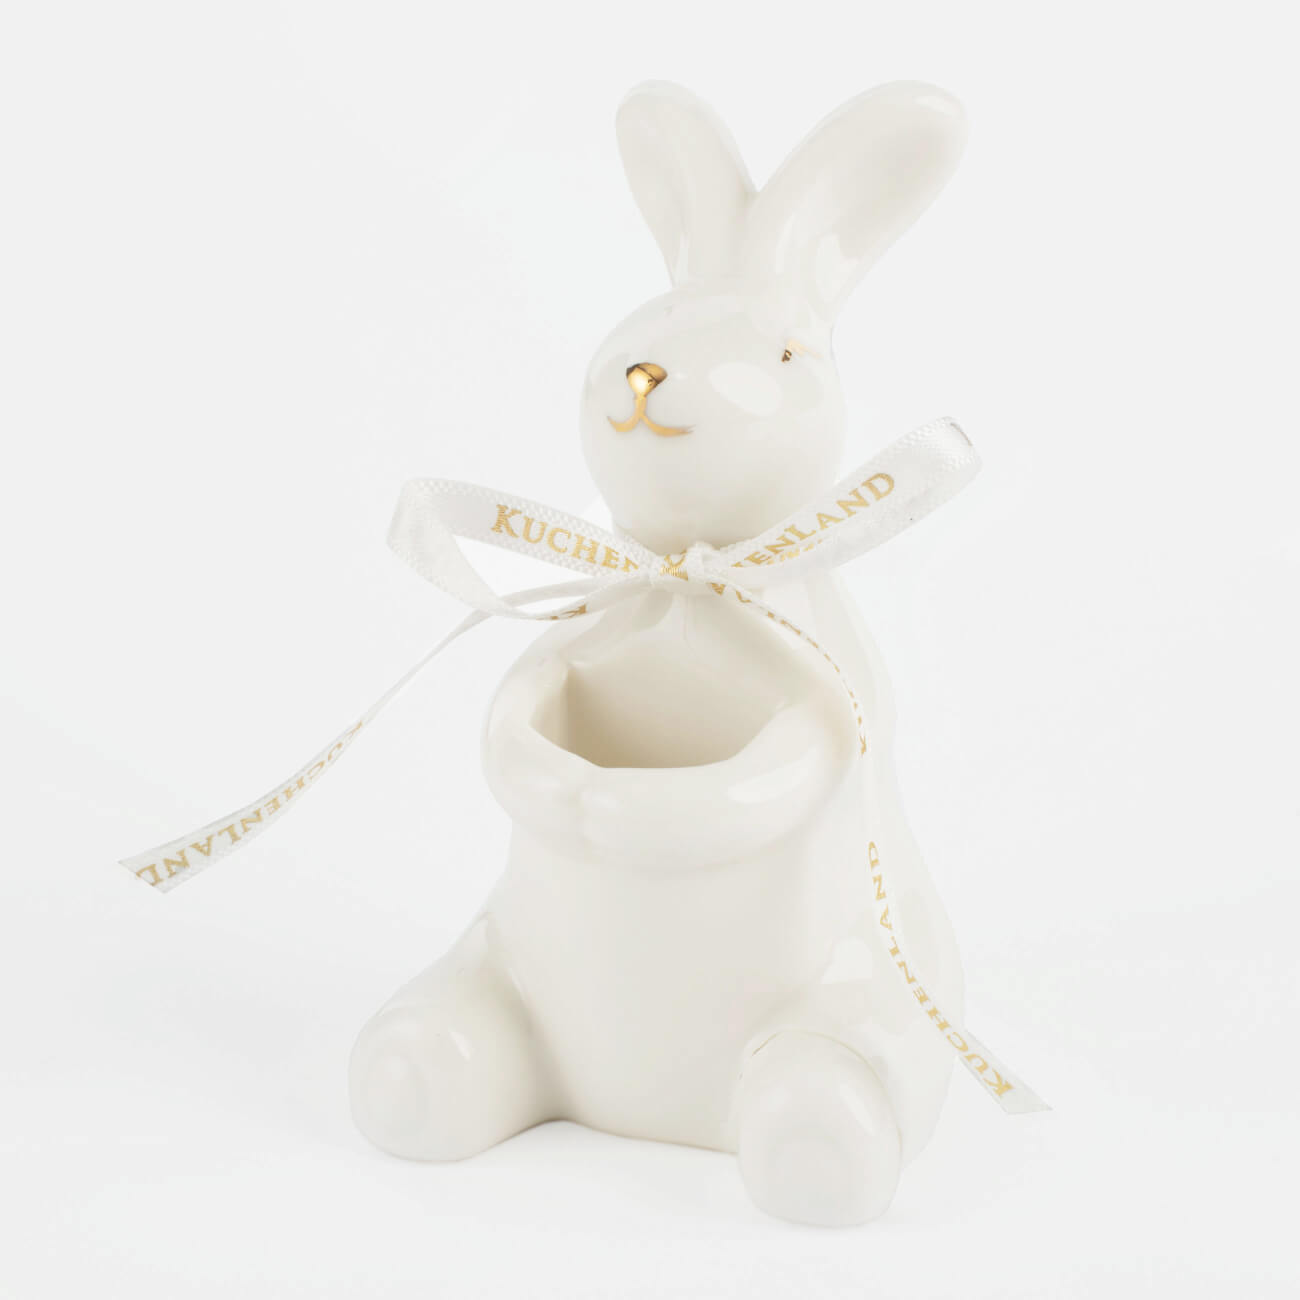 Подставка для зубочисток, 10 см, фарфор P, бело-золотистая, Кролик, Easter gold подставка для яйца 11 см керамика бело золотистая кролик со скорлупой easter gold